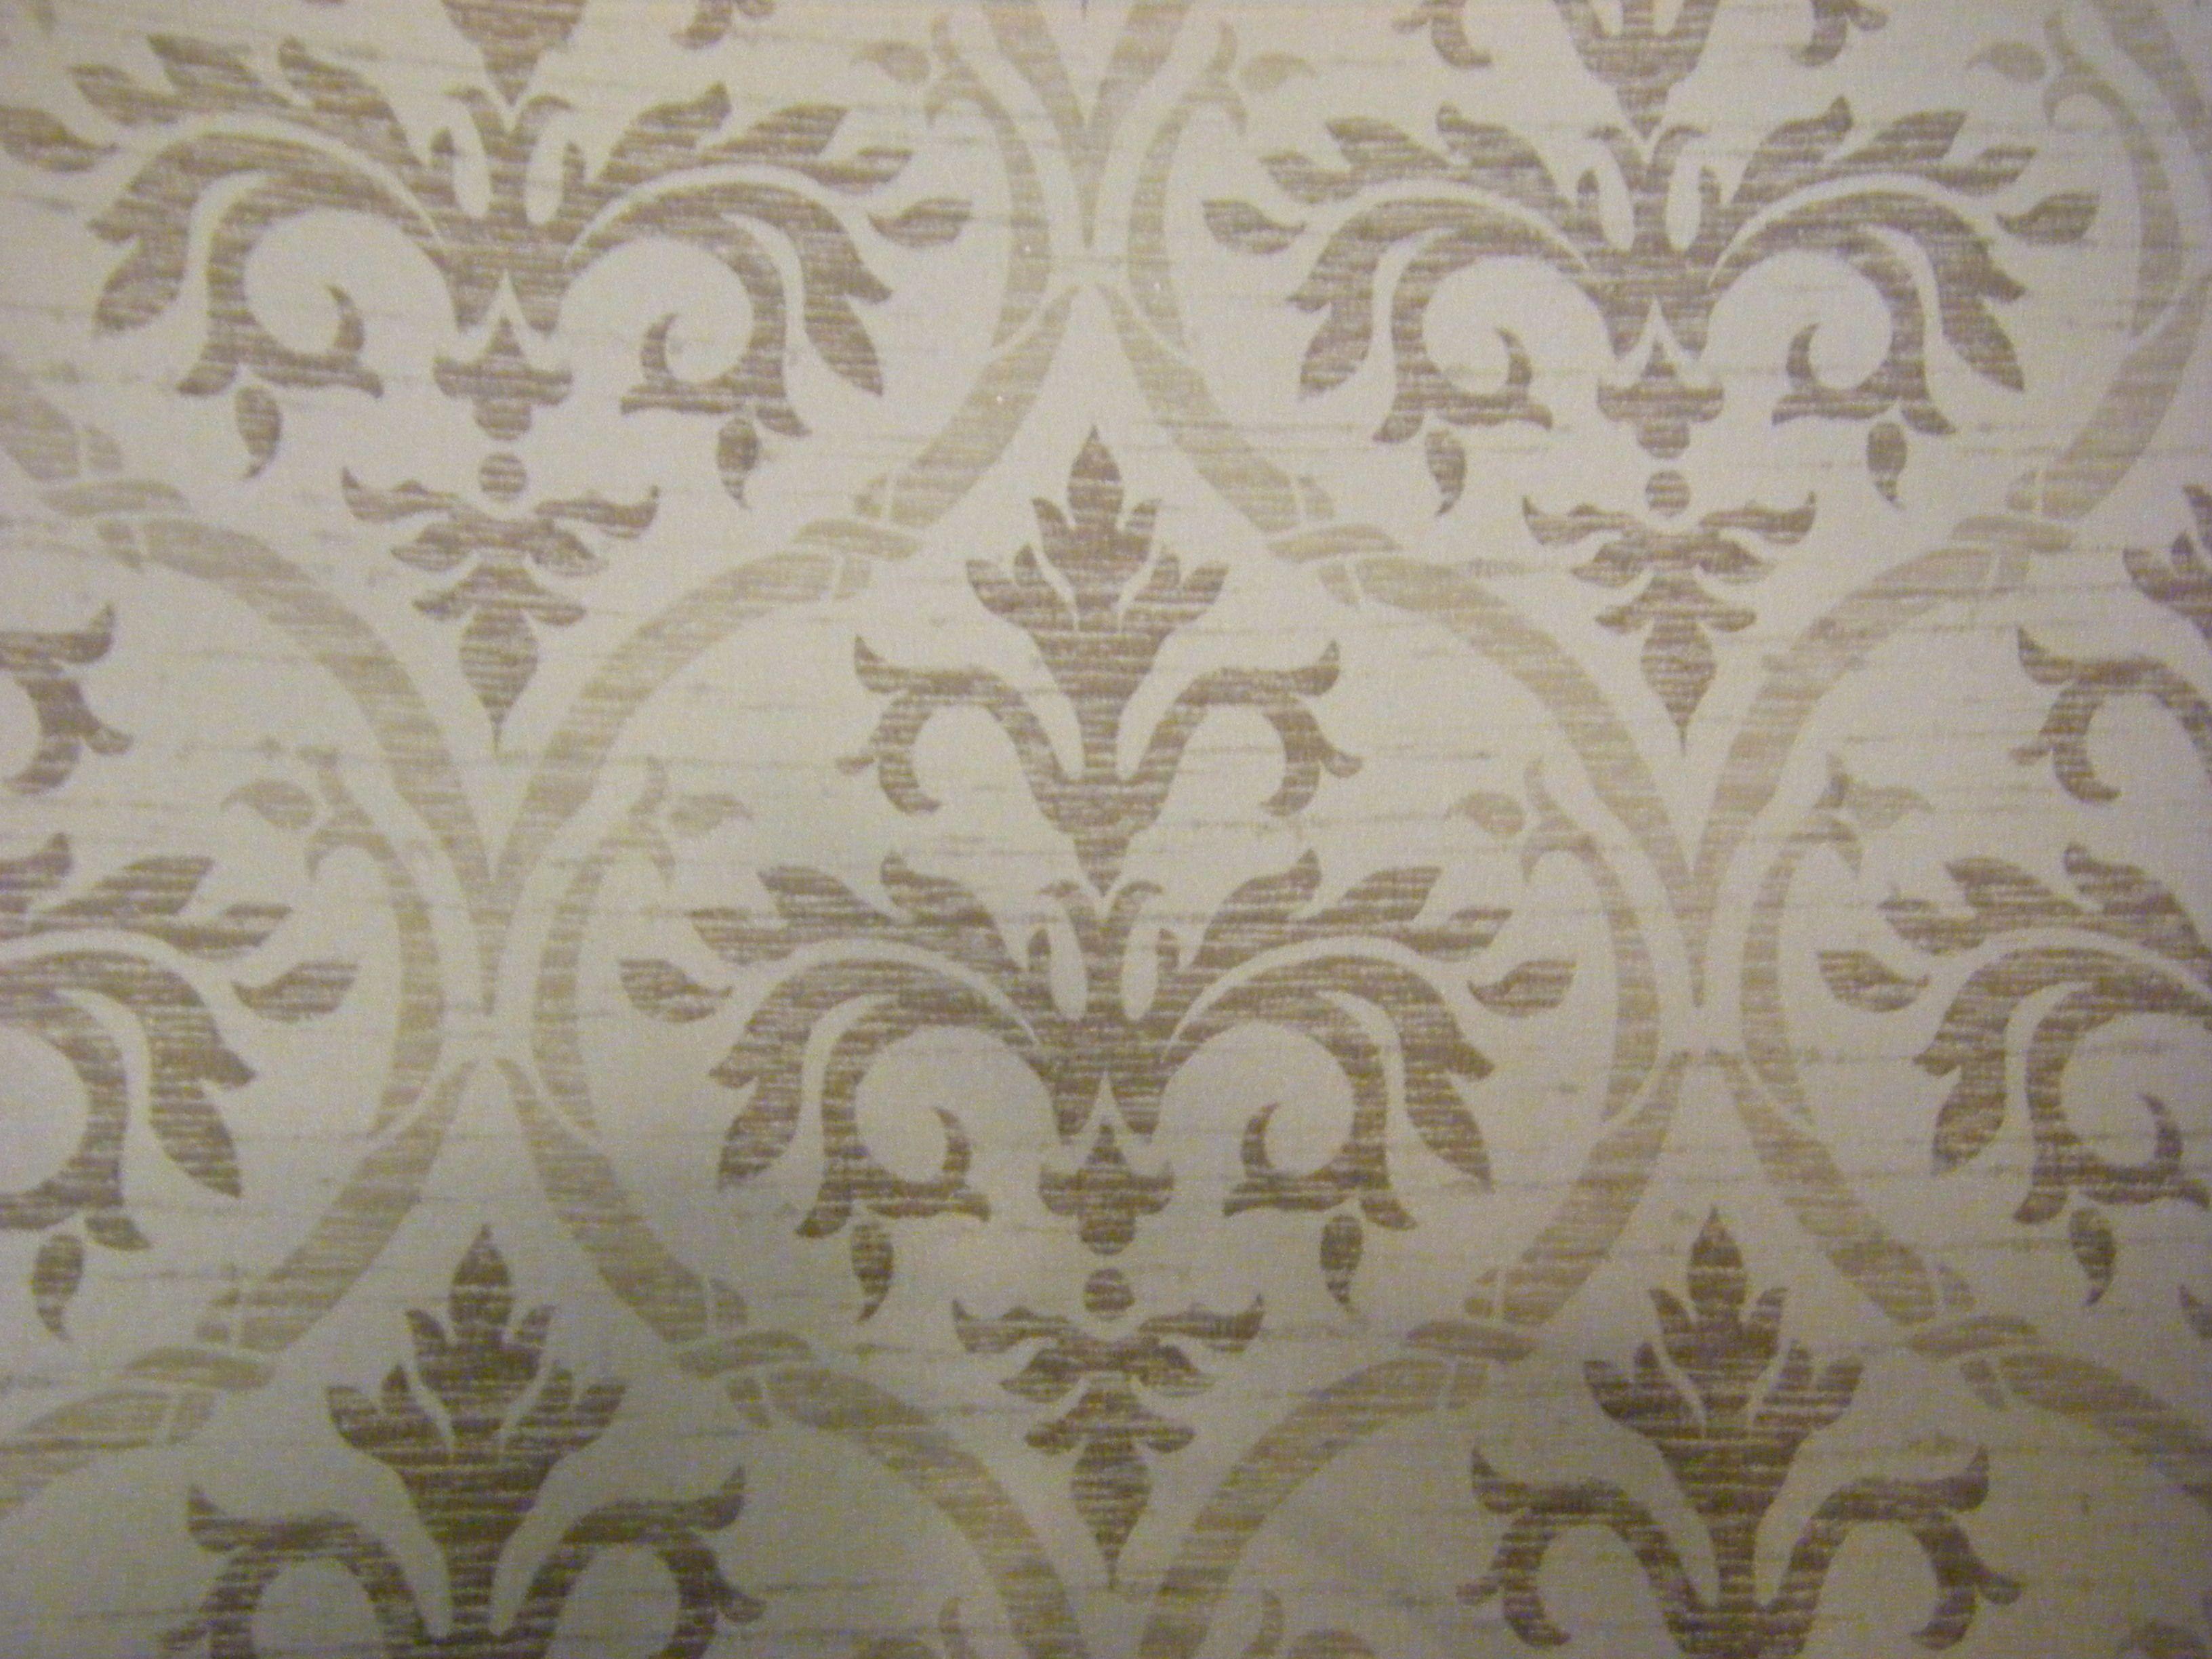 Wallpaper Revival. Maryott Custom Interiors